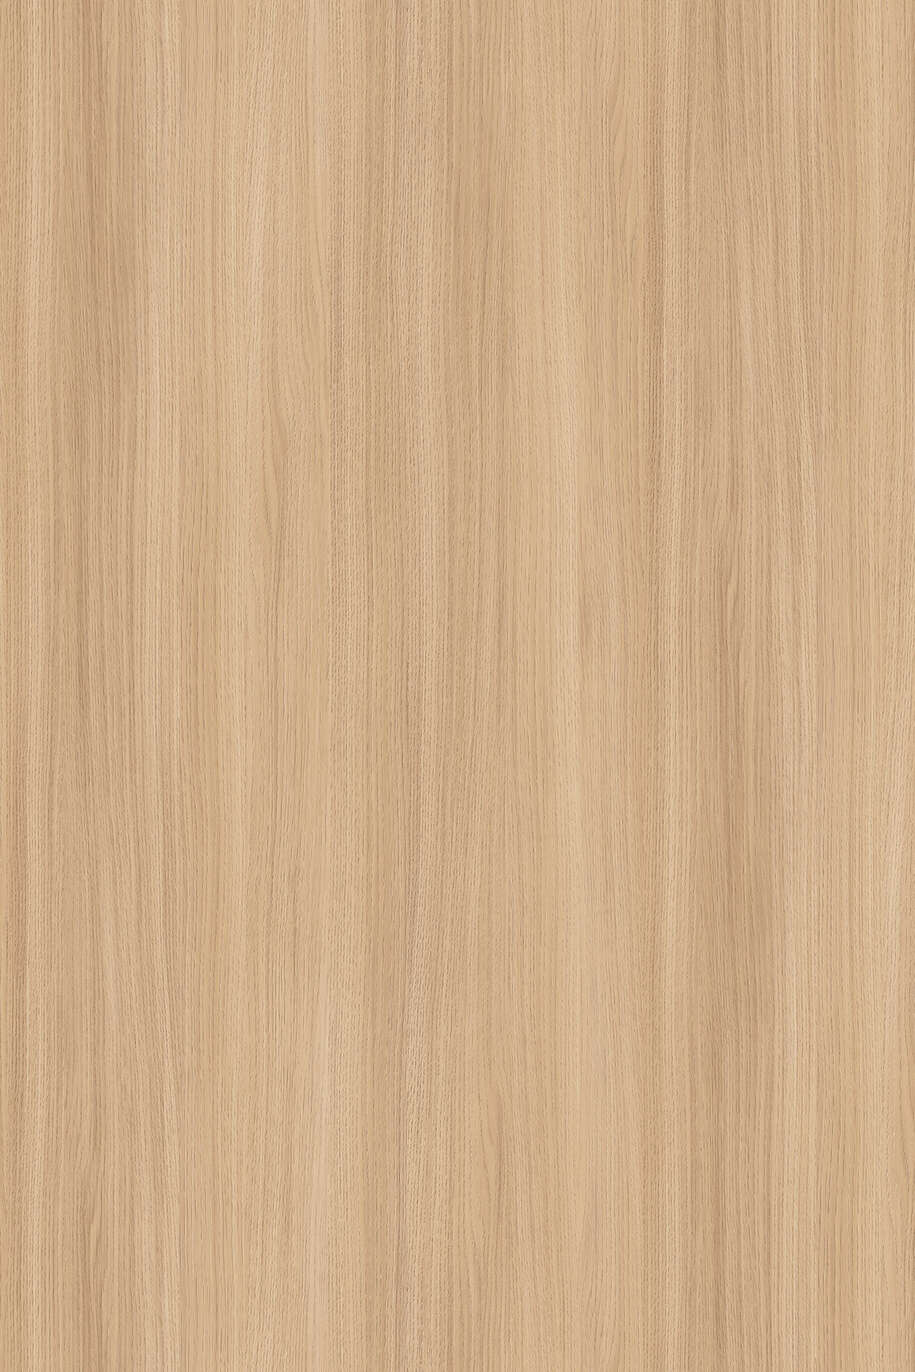 LDTD K543 SN Sand Barbera oak 18 x 2070 x 2800 mm